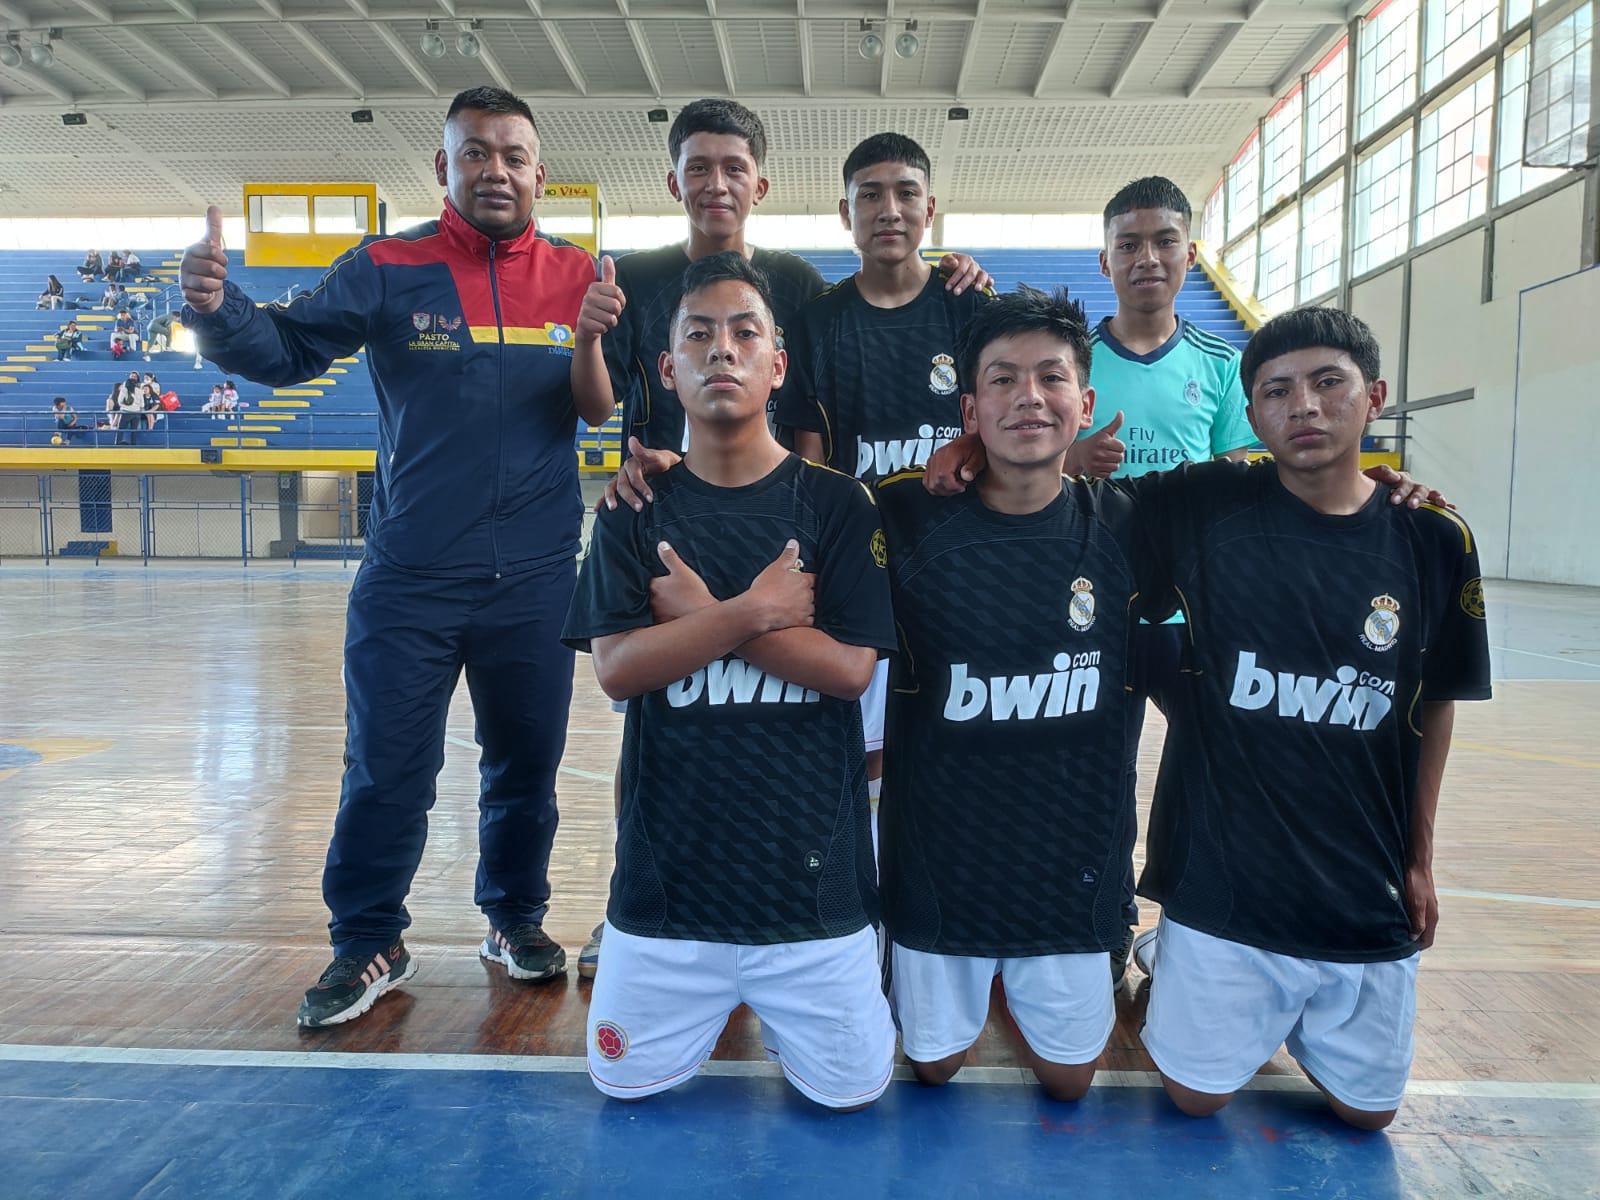 En la categoría juvenil el campeón fue el representativo de Jongovito, conformado por Deiby Montánchez, José Salas, Edison Montánchez, Wilmer Meneses, Edwin Nichoy y Juan Nichoy.